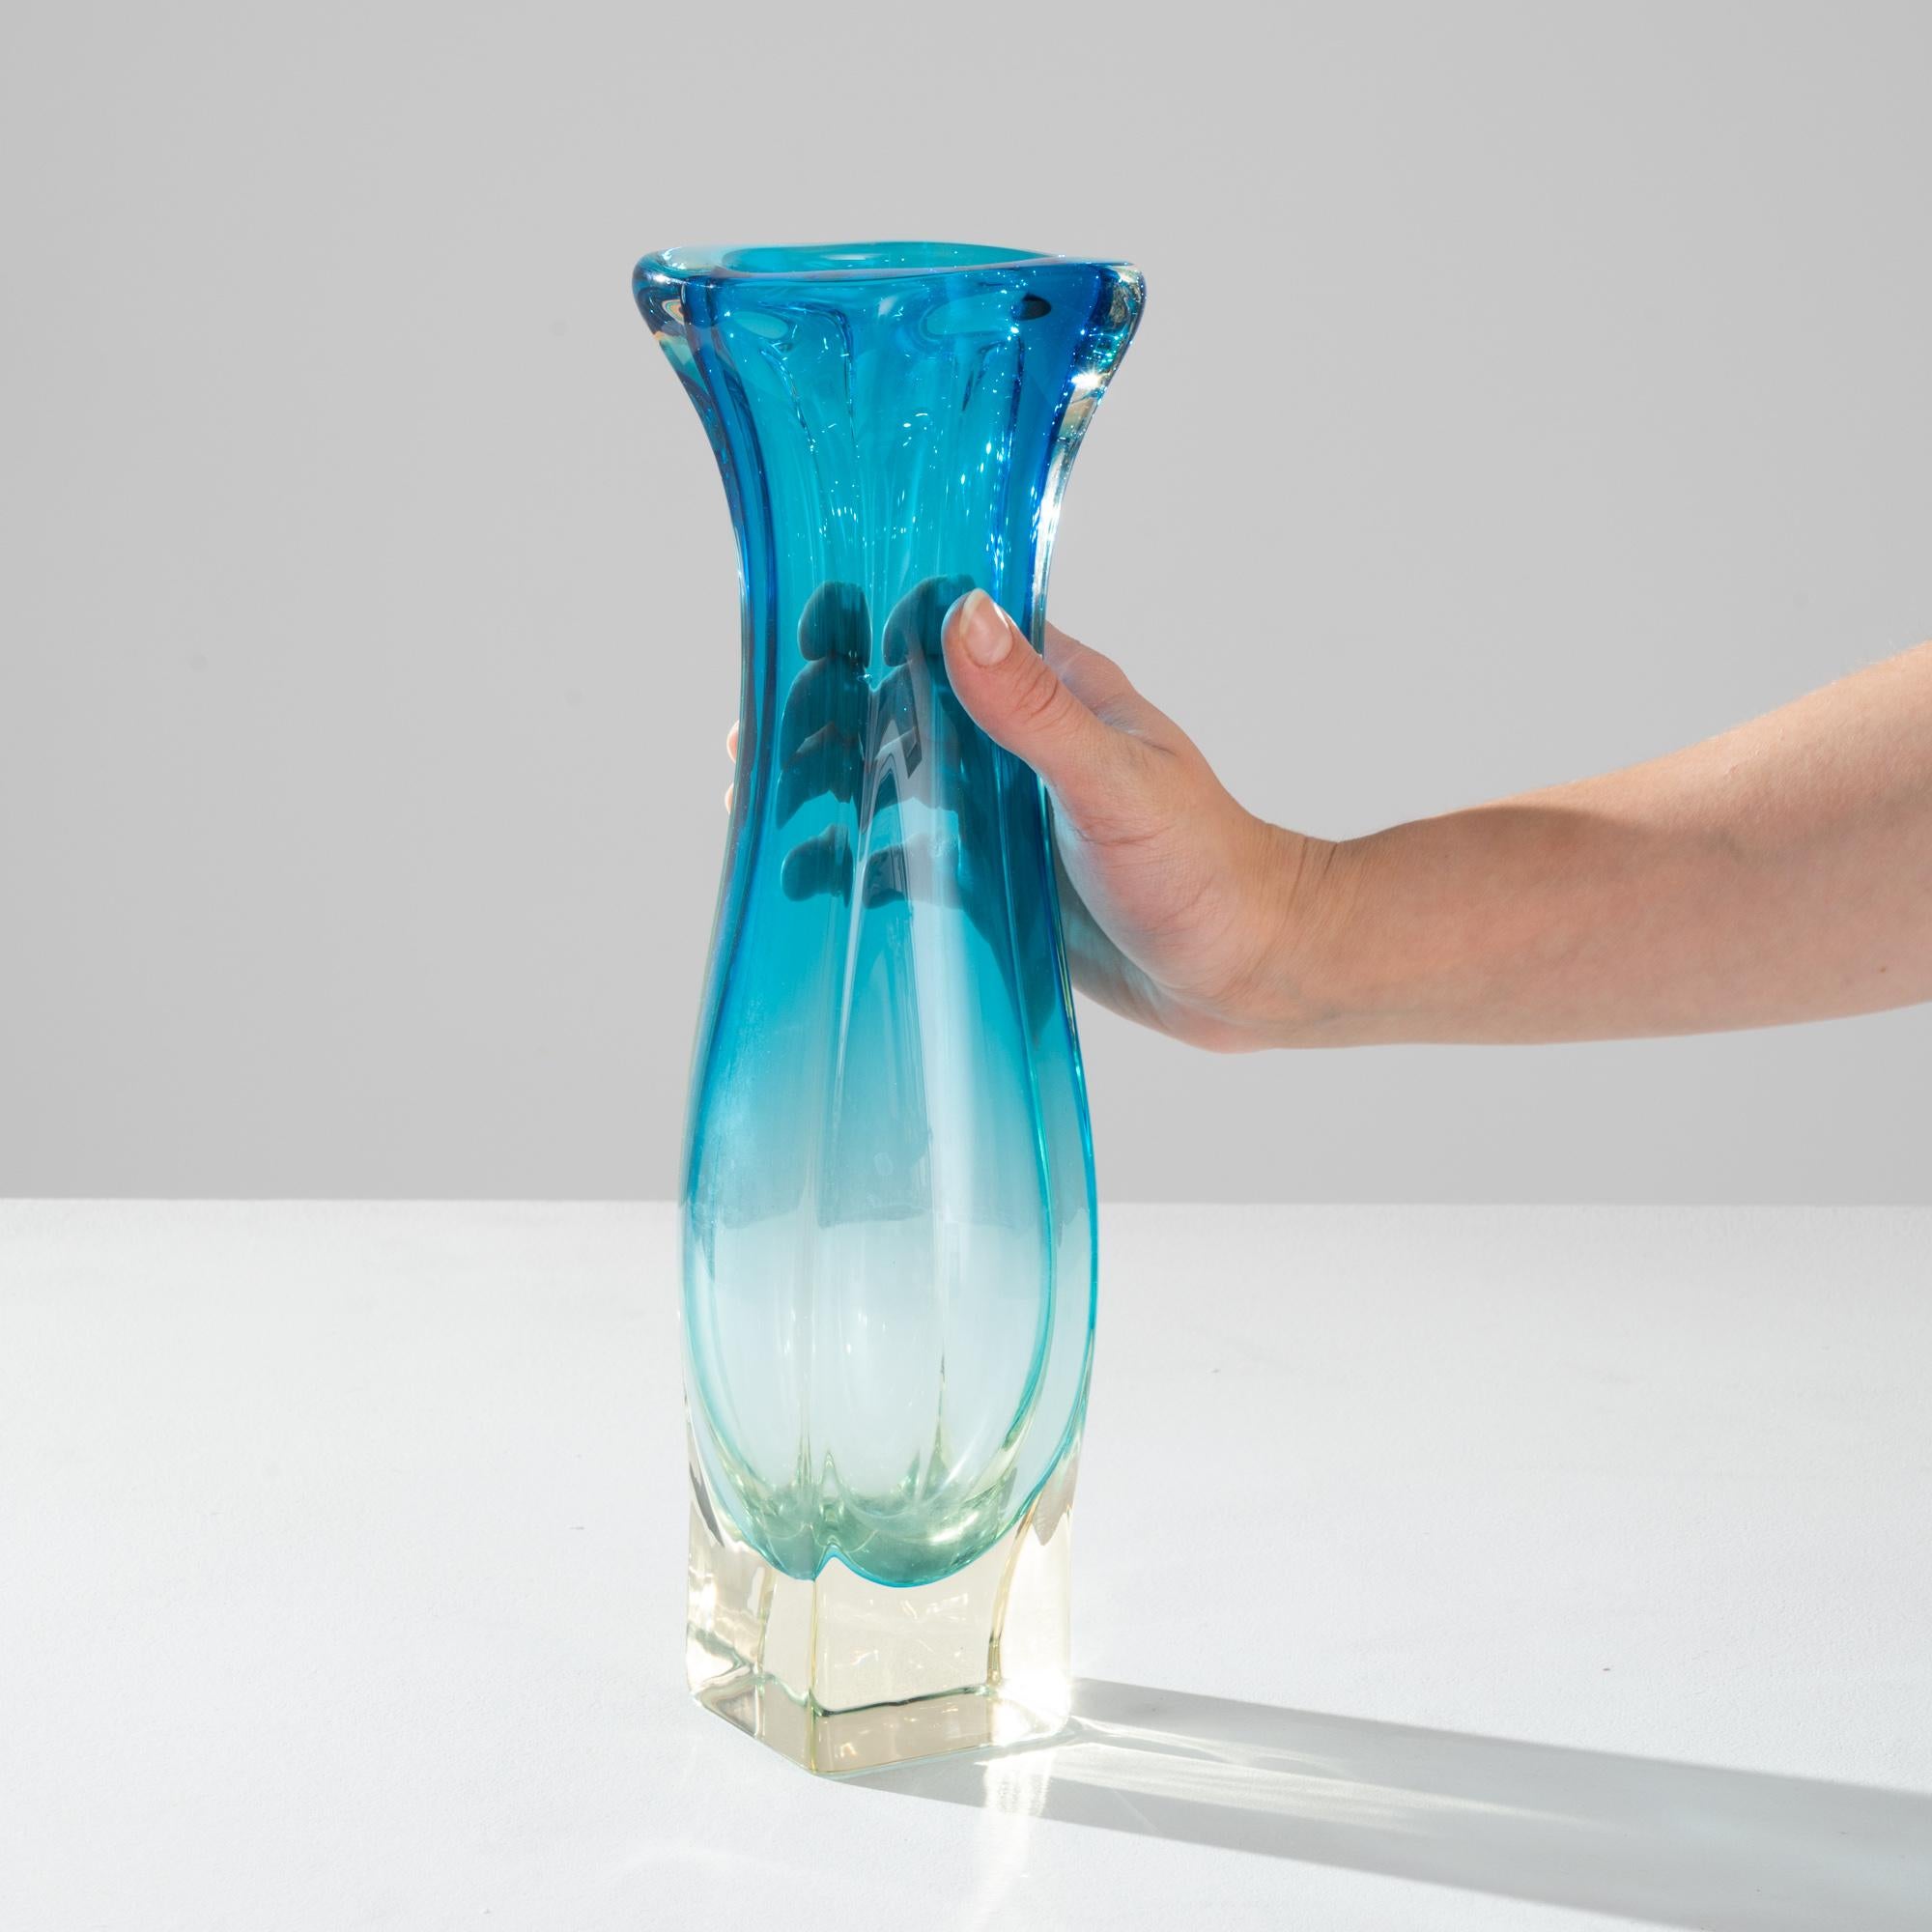 Die lebendigen Farbtöne und flüssigen Linien des geblasenen Kunstglases setzen einen unübersehbaren Akzent. Um 1960 in Belgien hergestellt, formt die ausdrucksstarke Glasarbeit eine kühne Silhouette. Organisch und abstrakt, erinnert es an einen